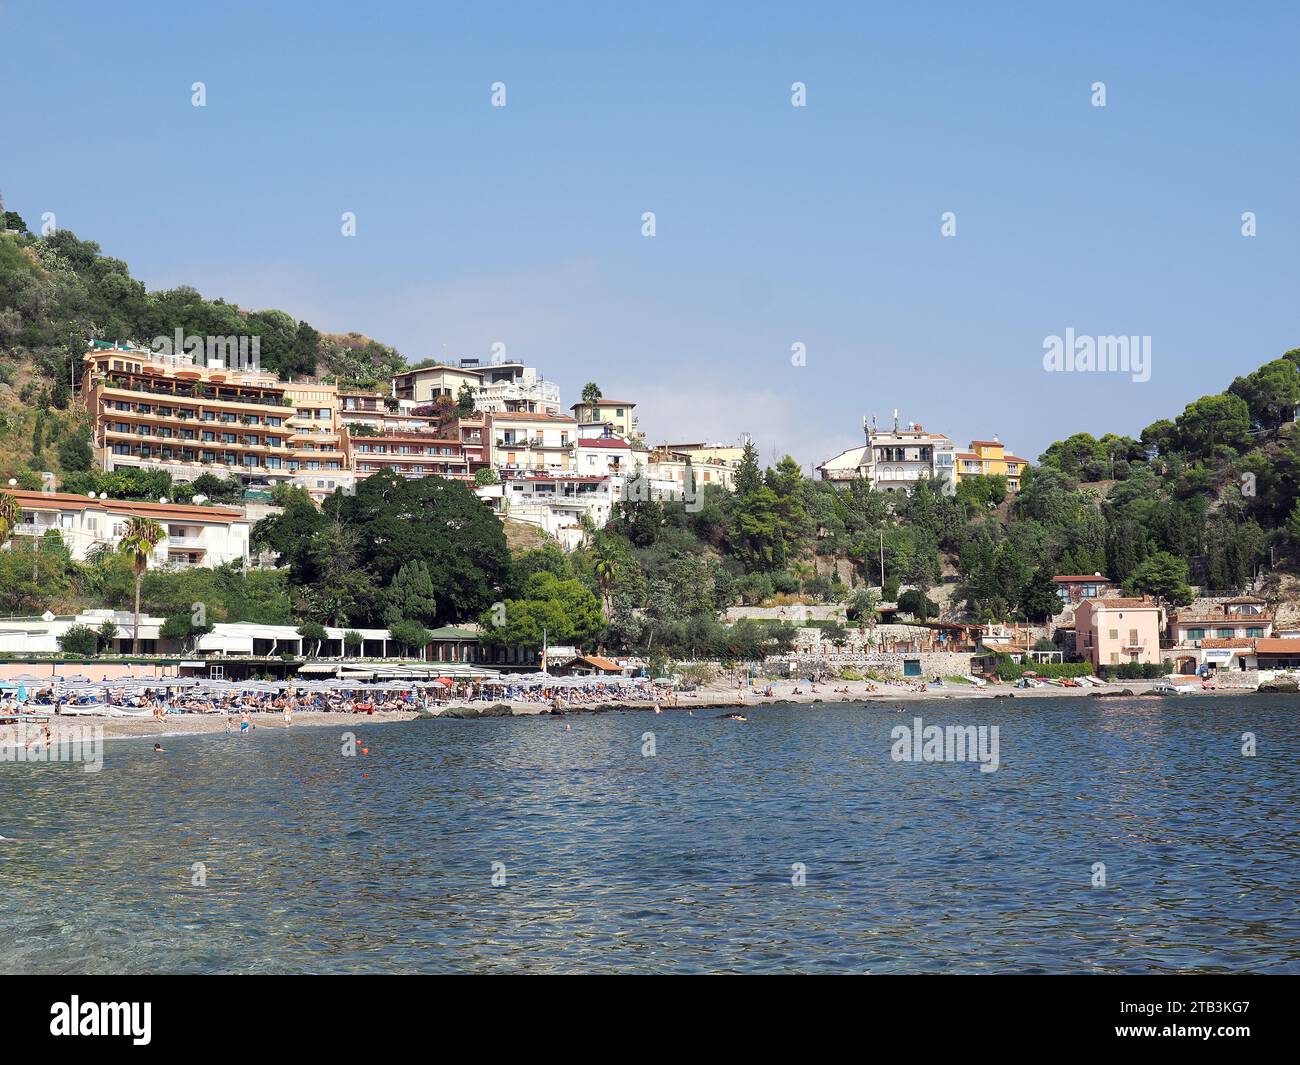 hotels, beach, Ionian Sea, Mazzarò, Taormina, Sicily, Sicilia, Italy, Europe Stock Photo